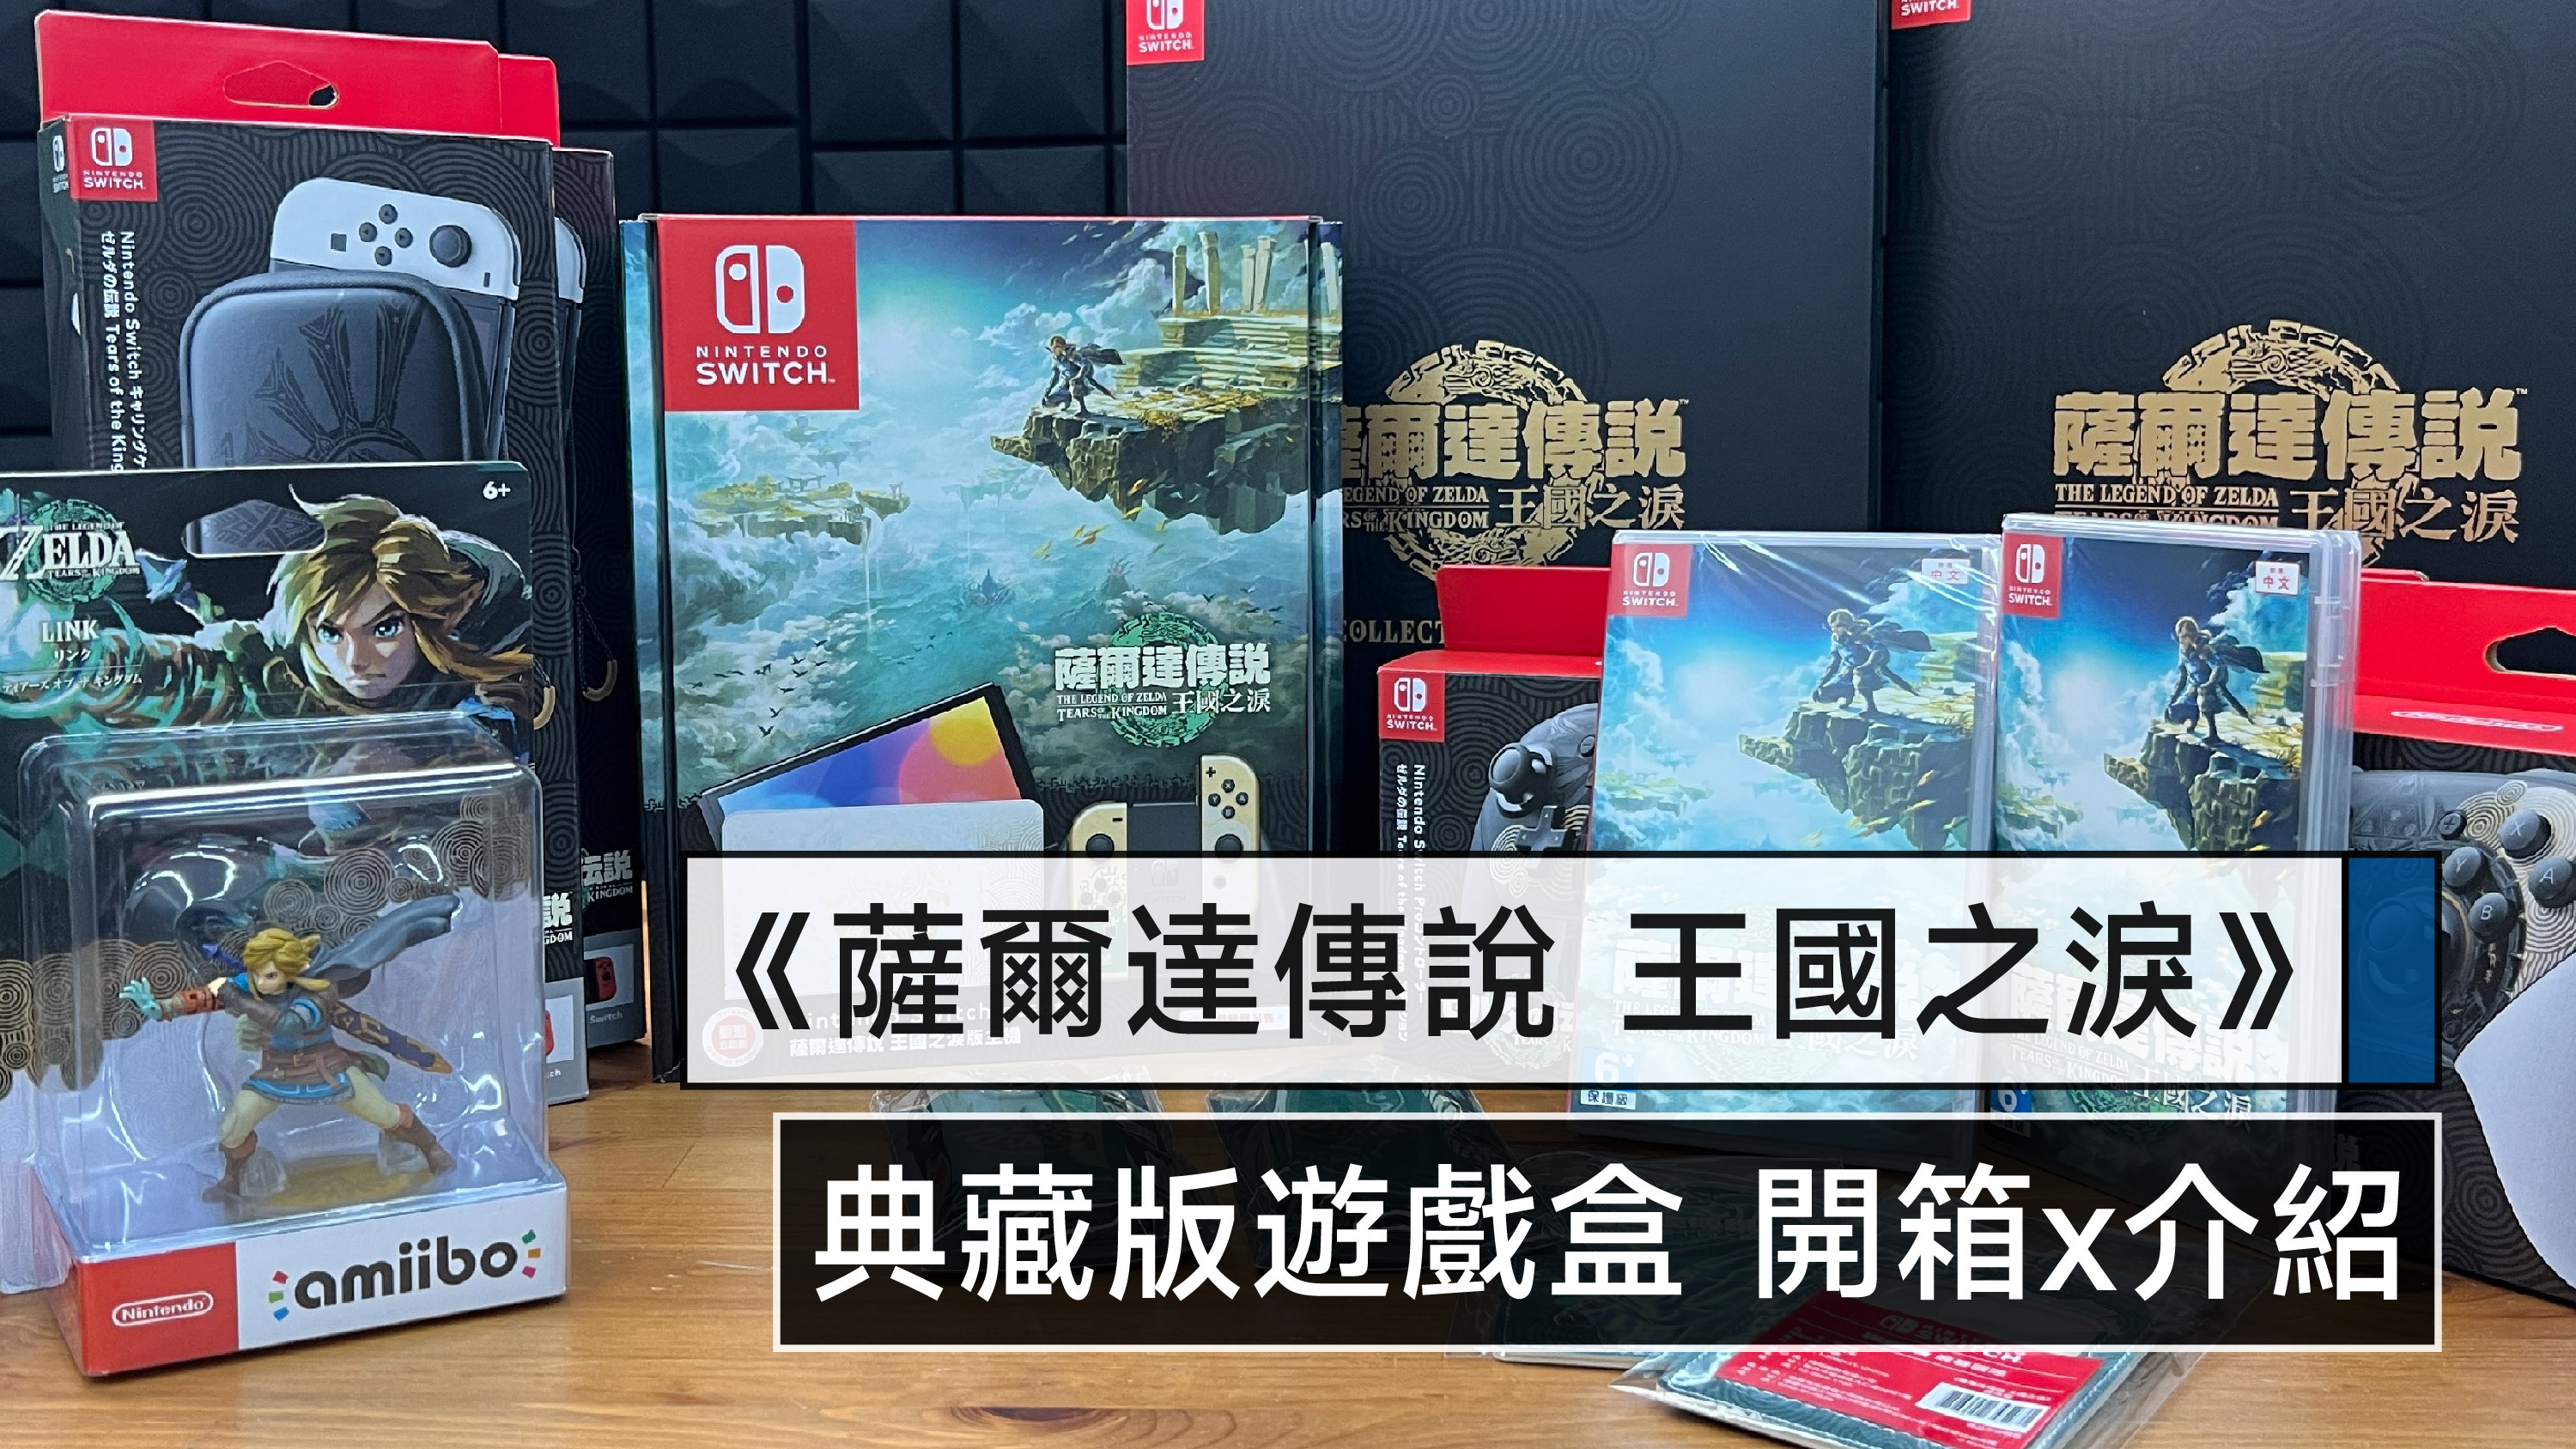 薩爾達傳說王國之淚》典藏版遊戲禮盒開箱介紹Nintendo Switch 最新遊戲